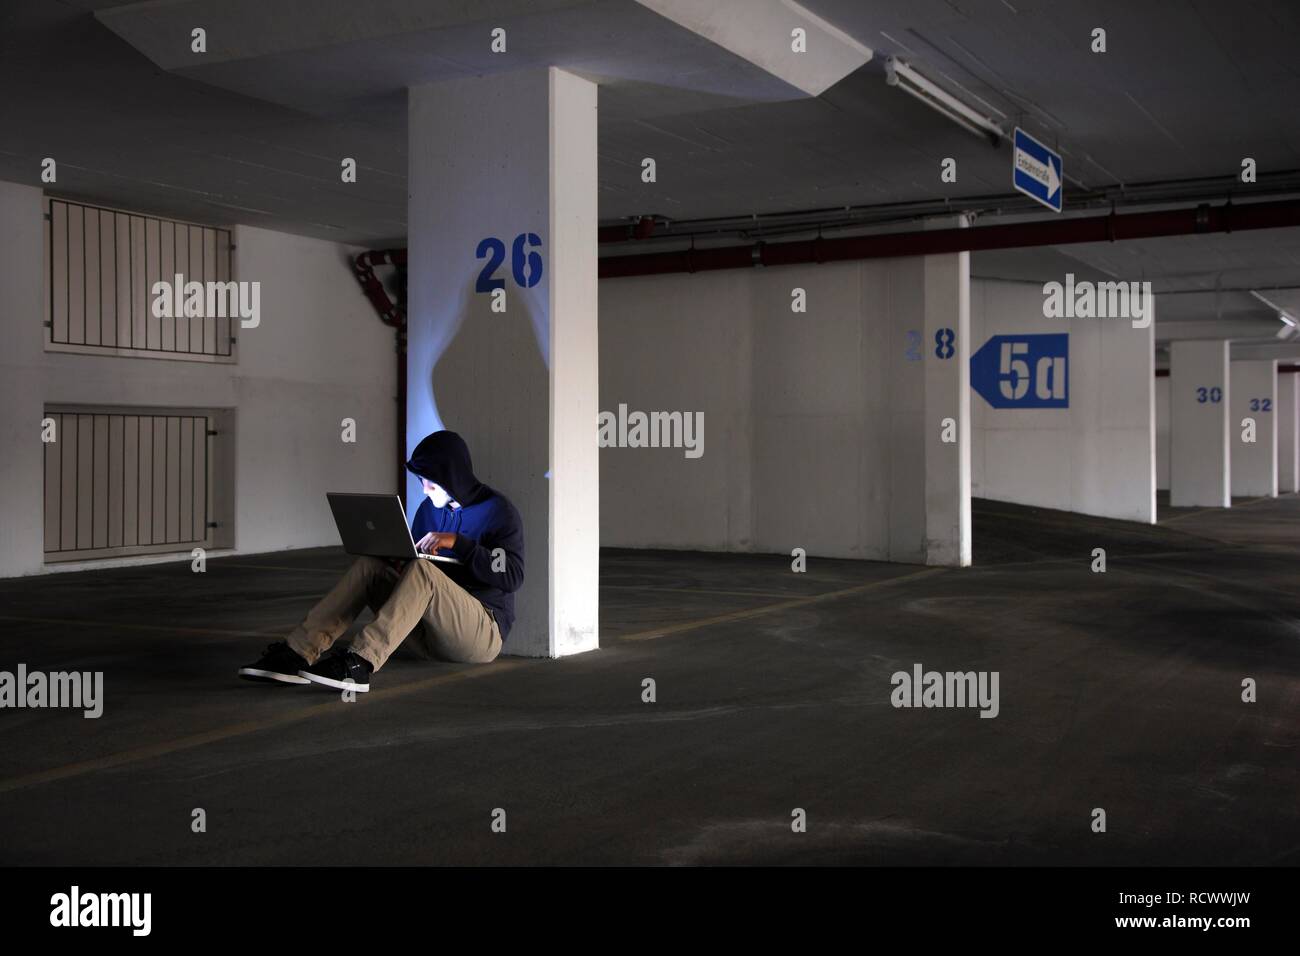 El hombre navegando en un ordenador portátil en un vacío estacionamiento de varios pisos, imagen simbólica para la piratería informática y delito informático Foto de stock